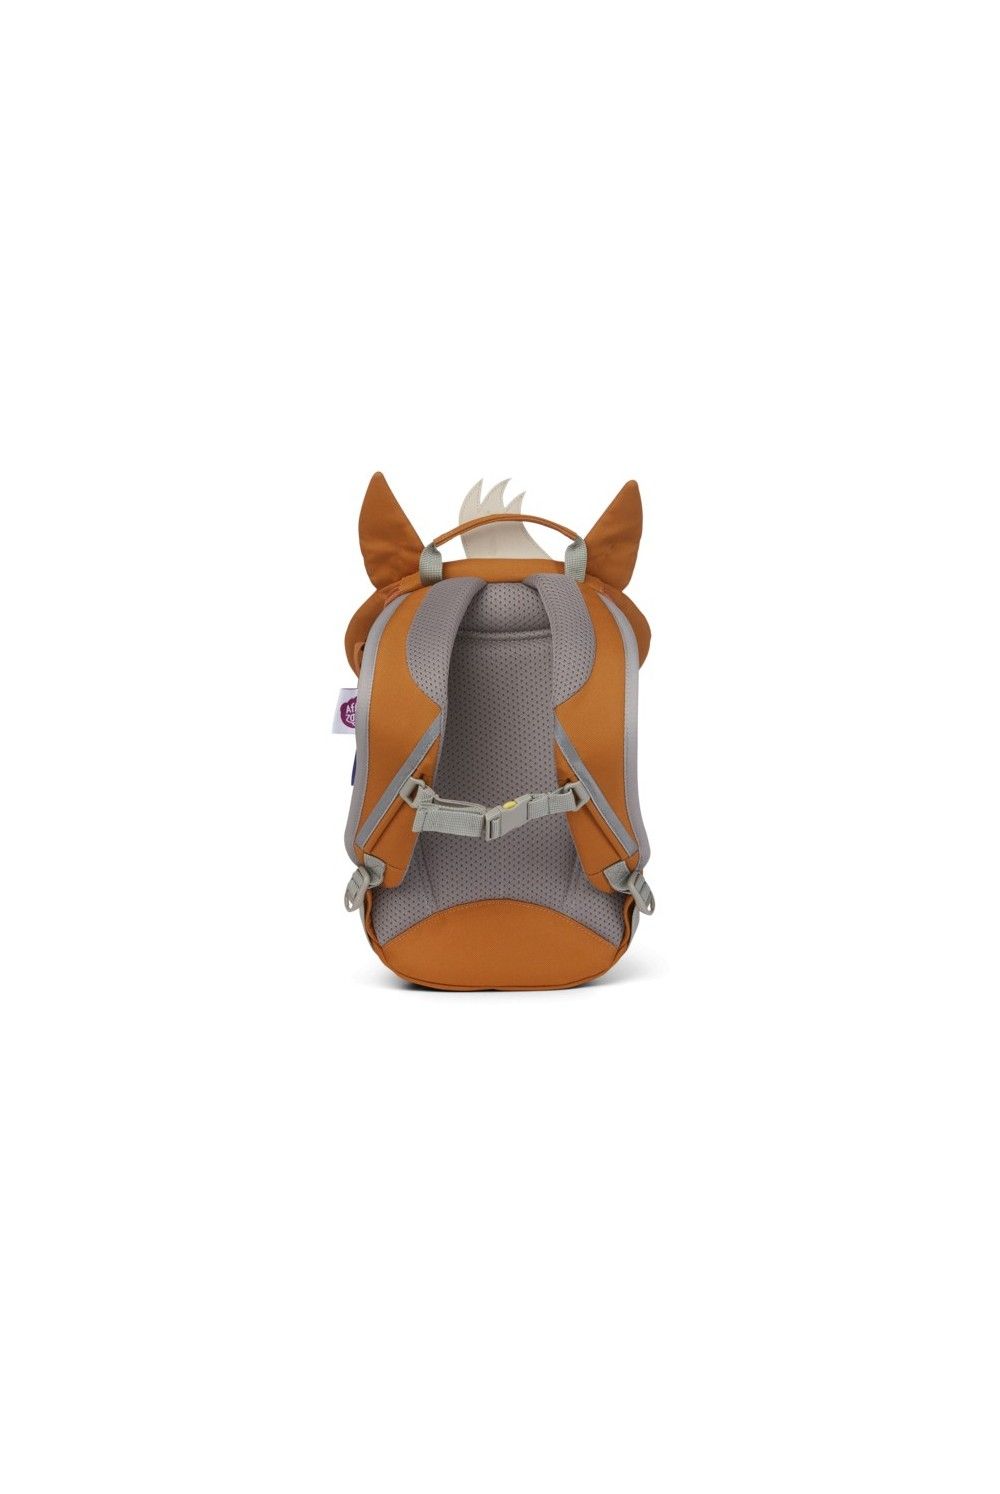 Children backpack Affenzahn little friend Horse